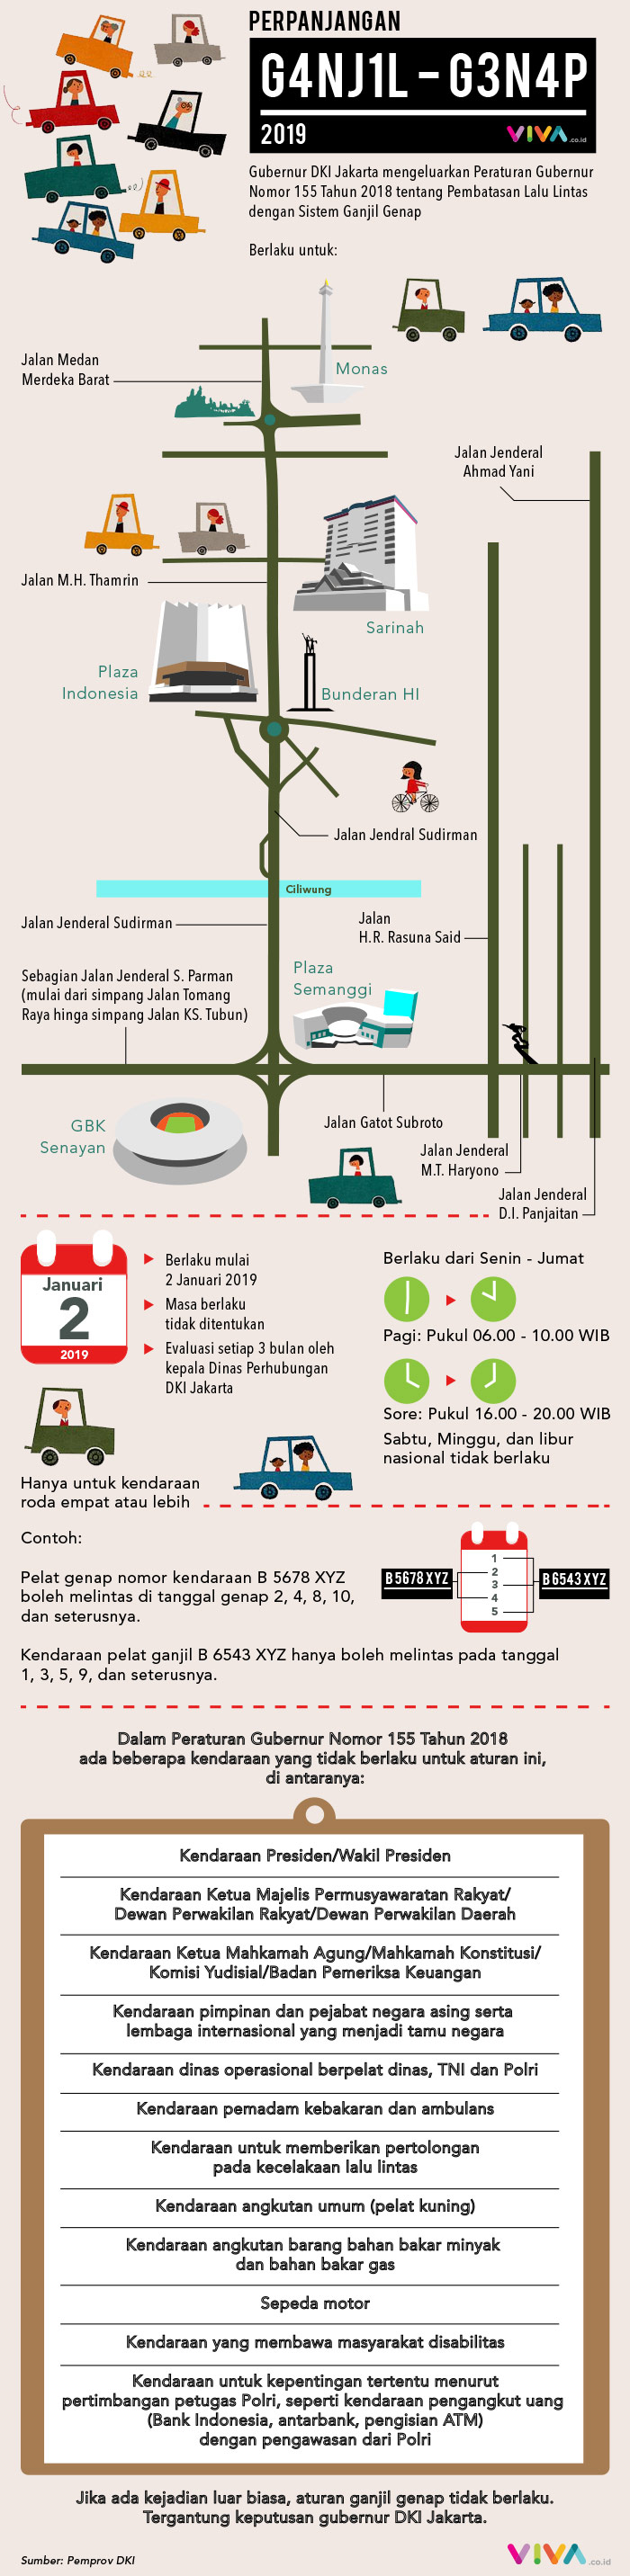 Berikut pengaturan kembali pembatasan lalu lintas dengan sistem ganjil genap dalam infografik